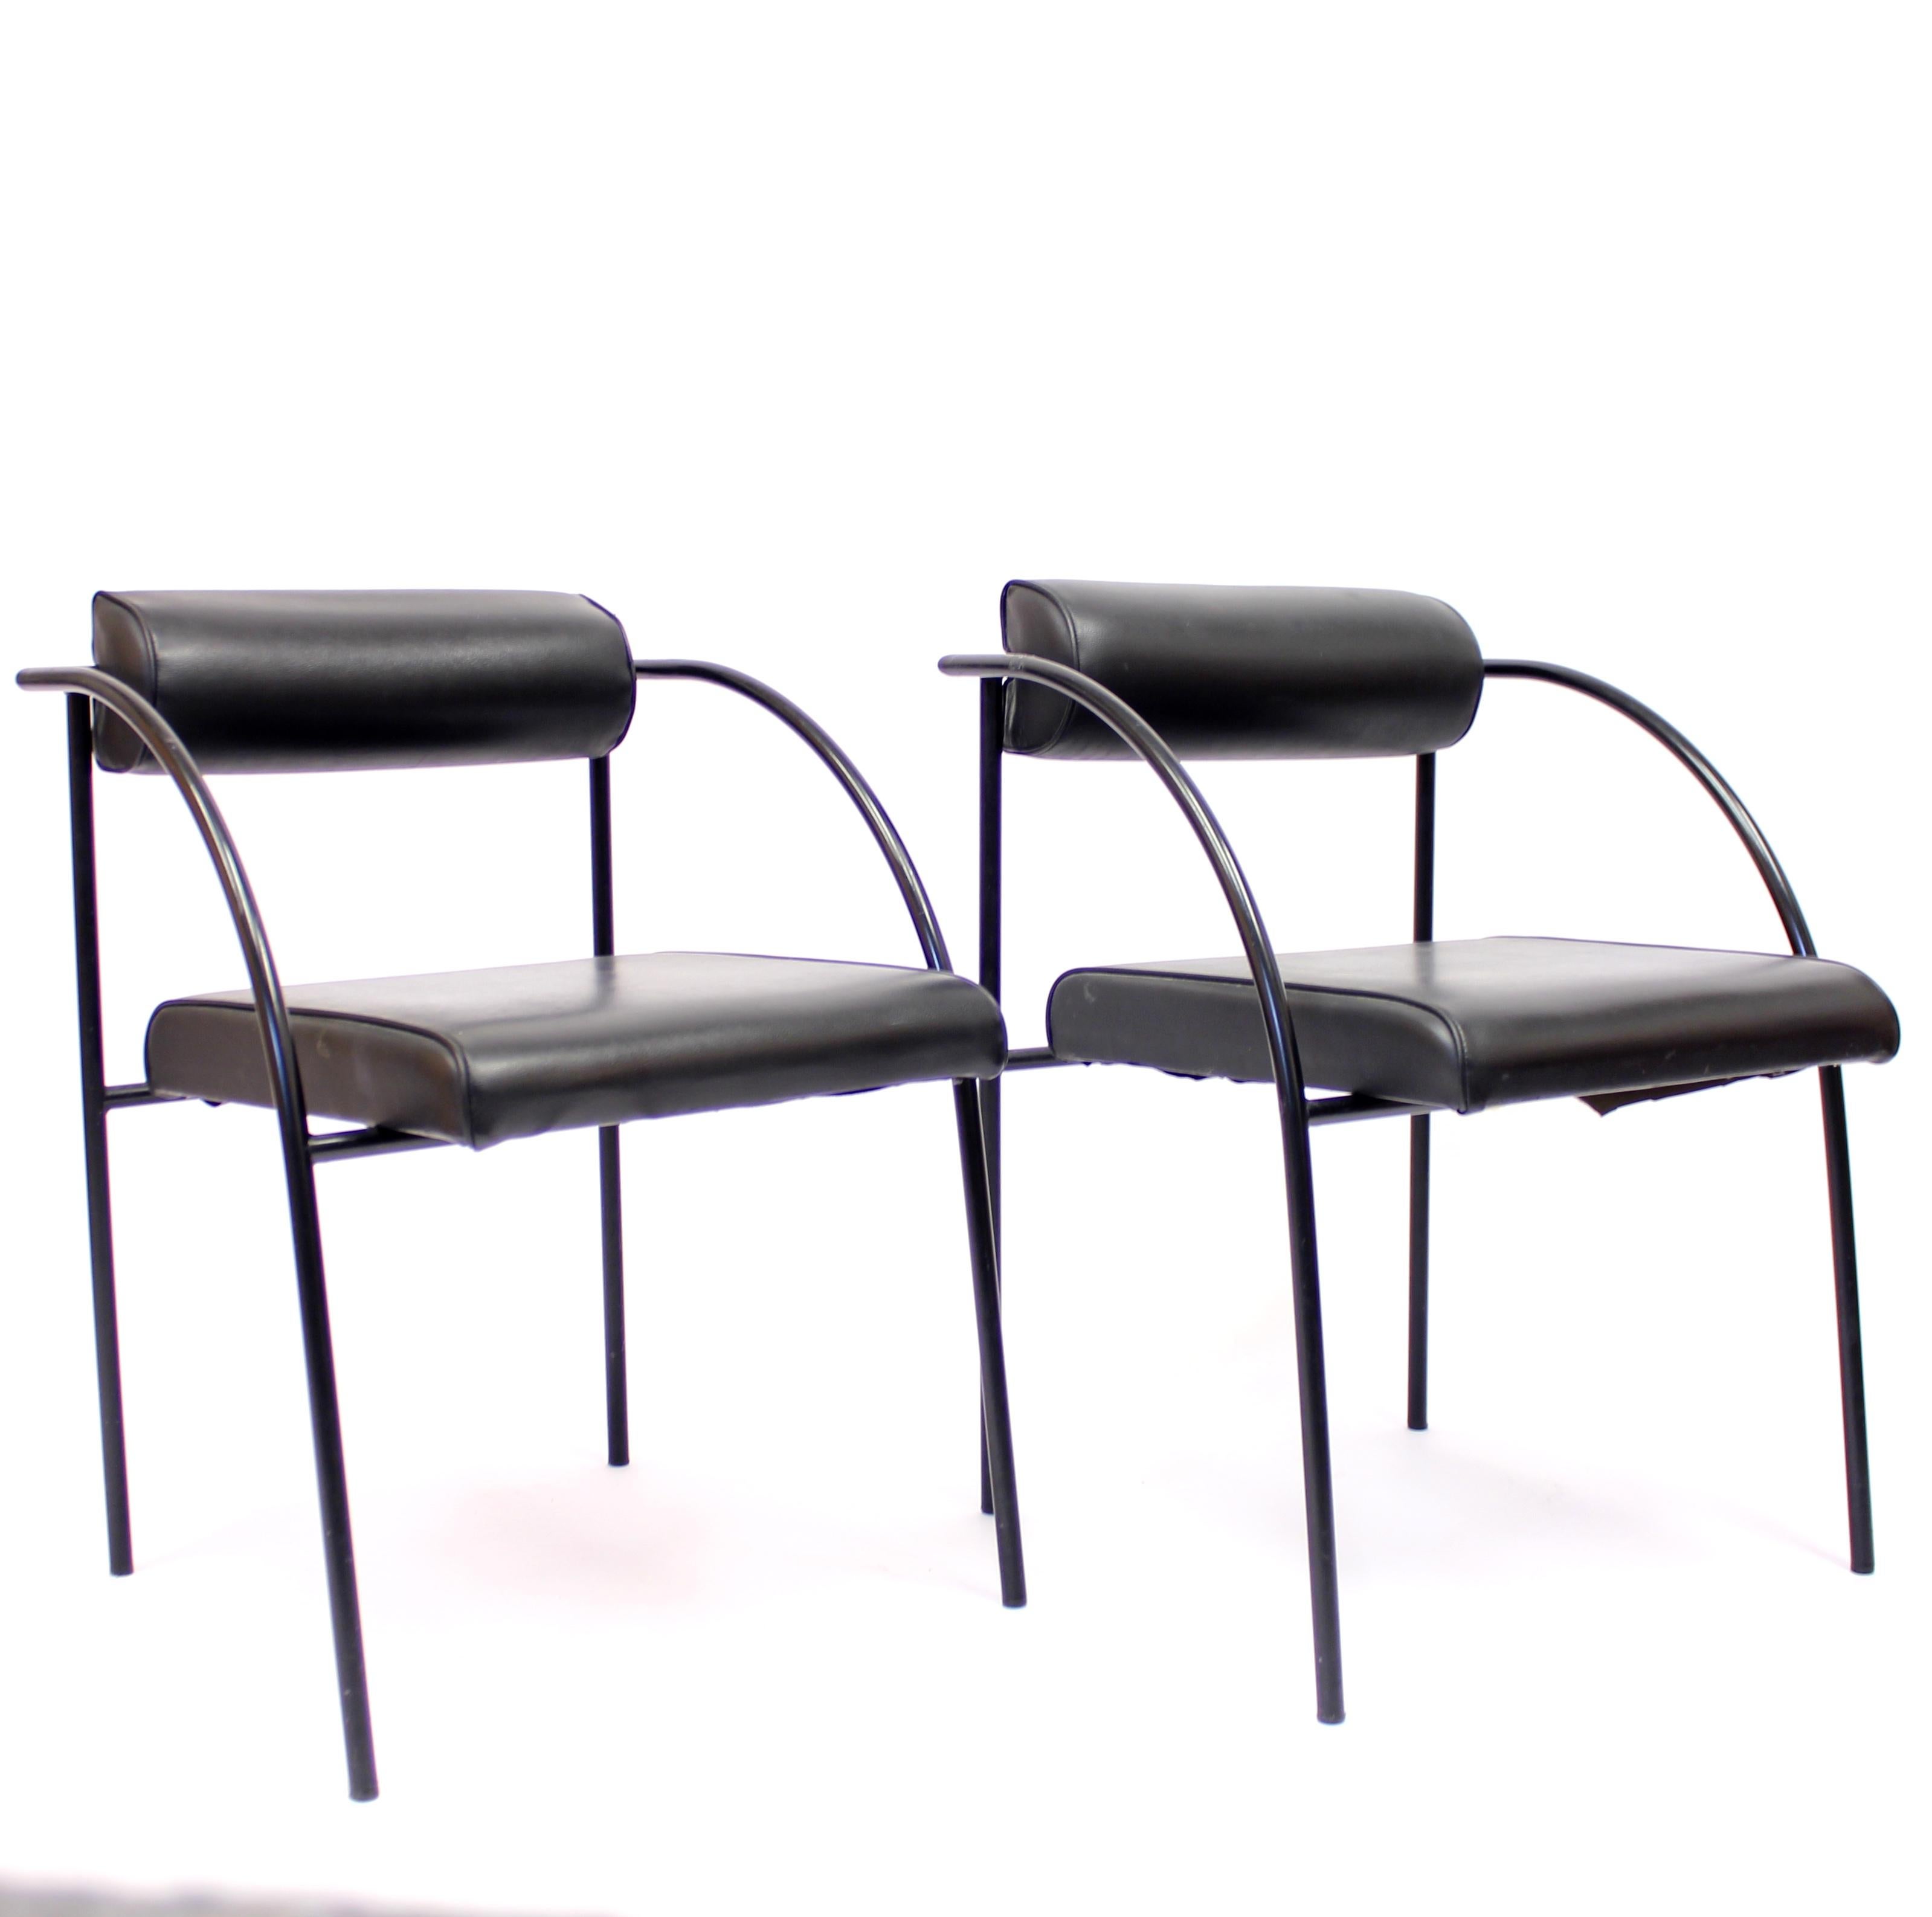 Fin du 20e siècle Rodney Kinsman, paire de chaises postmodernes viennoises, Bieffeplast, années 1980 en vente